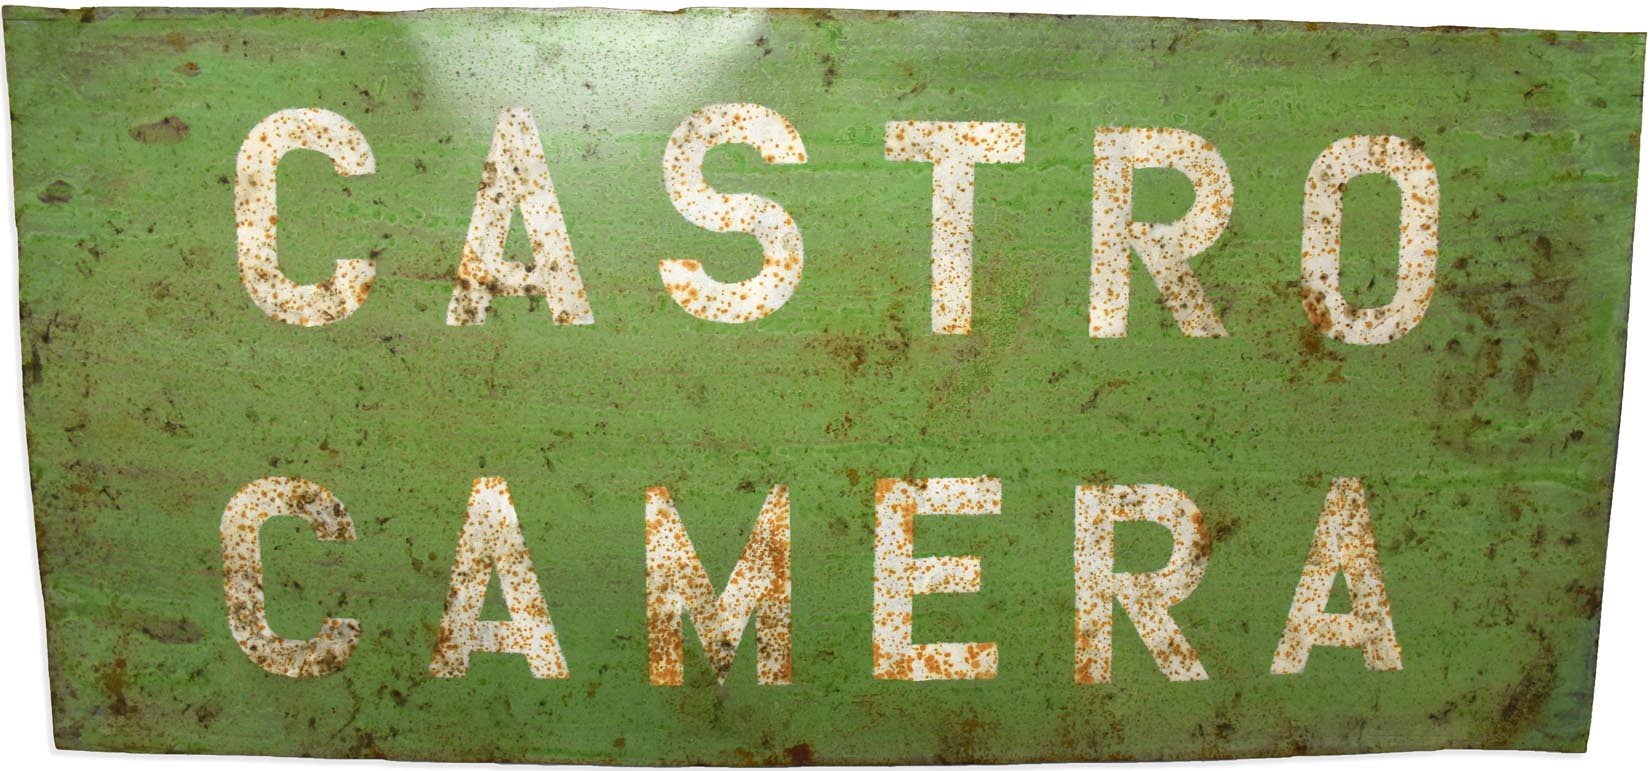 - 1960s "Castro Camera" Sign from Harvey Milk's Camera Store